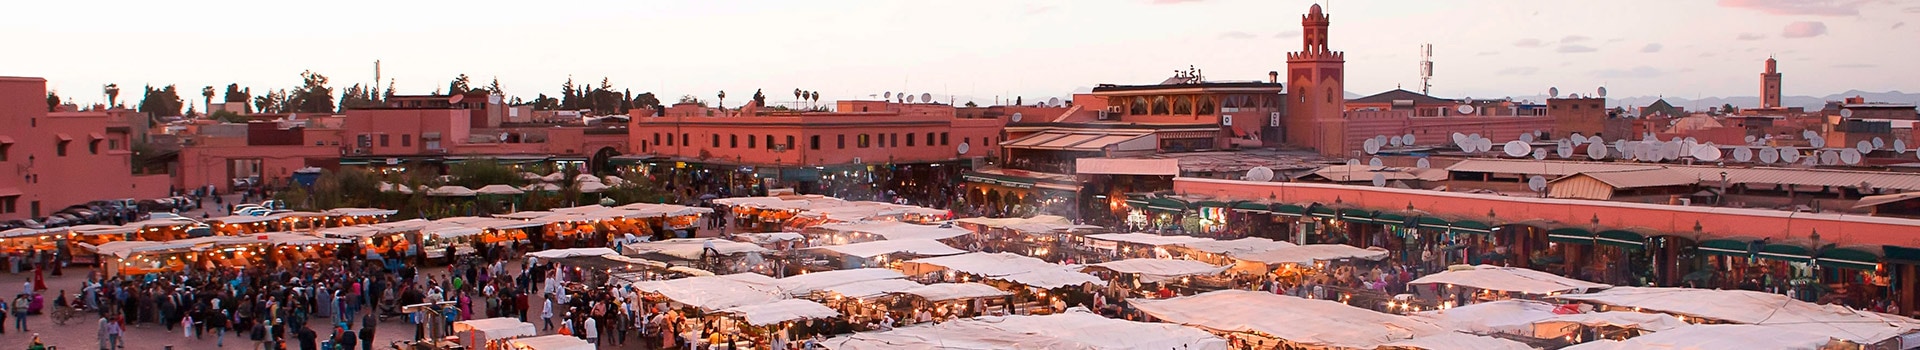 Nantes - Marrakech